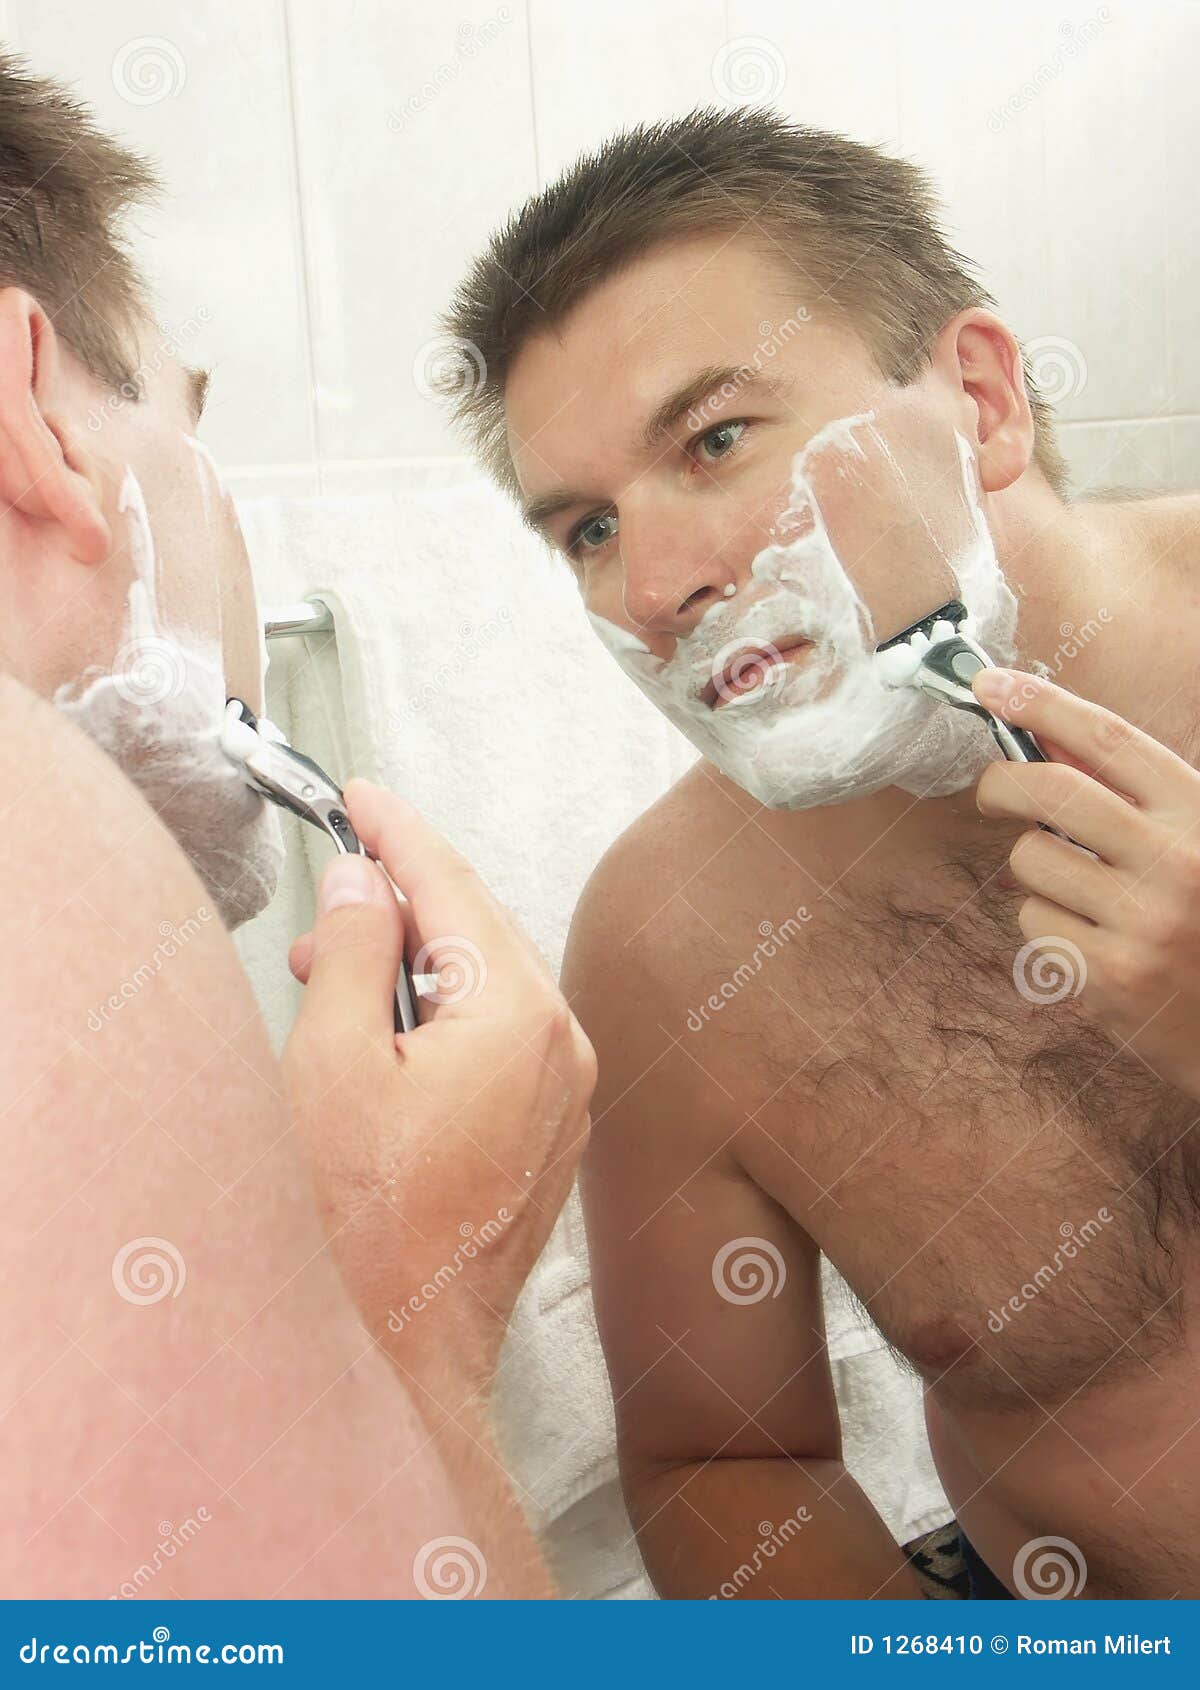 Бреют какое лицо. Мужчина бреется. Бритье в ванной. Мужчина бреет лицо. Мужчина бреется в ванной.